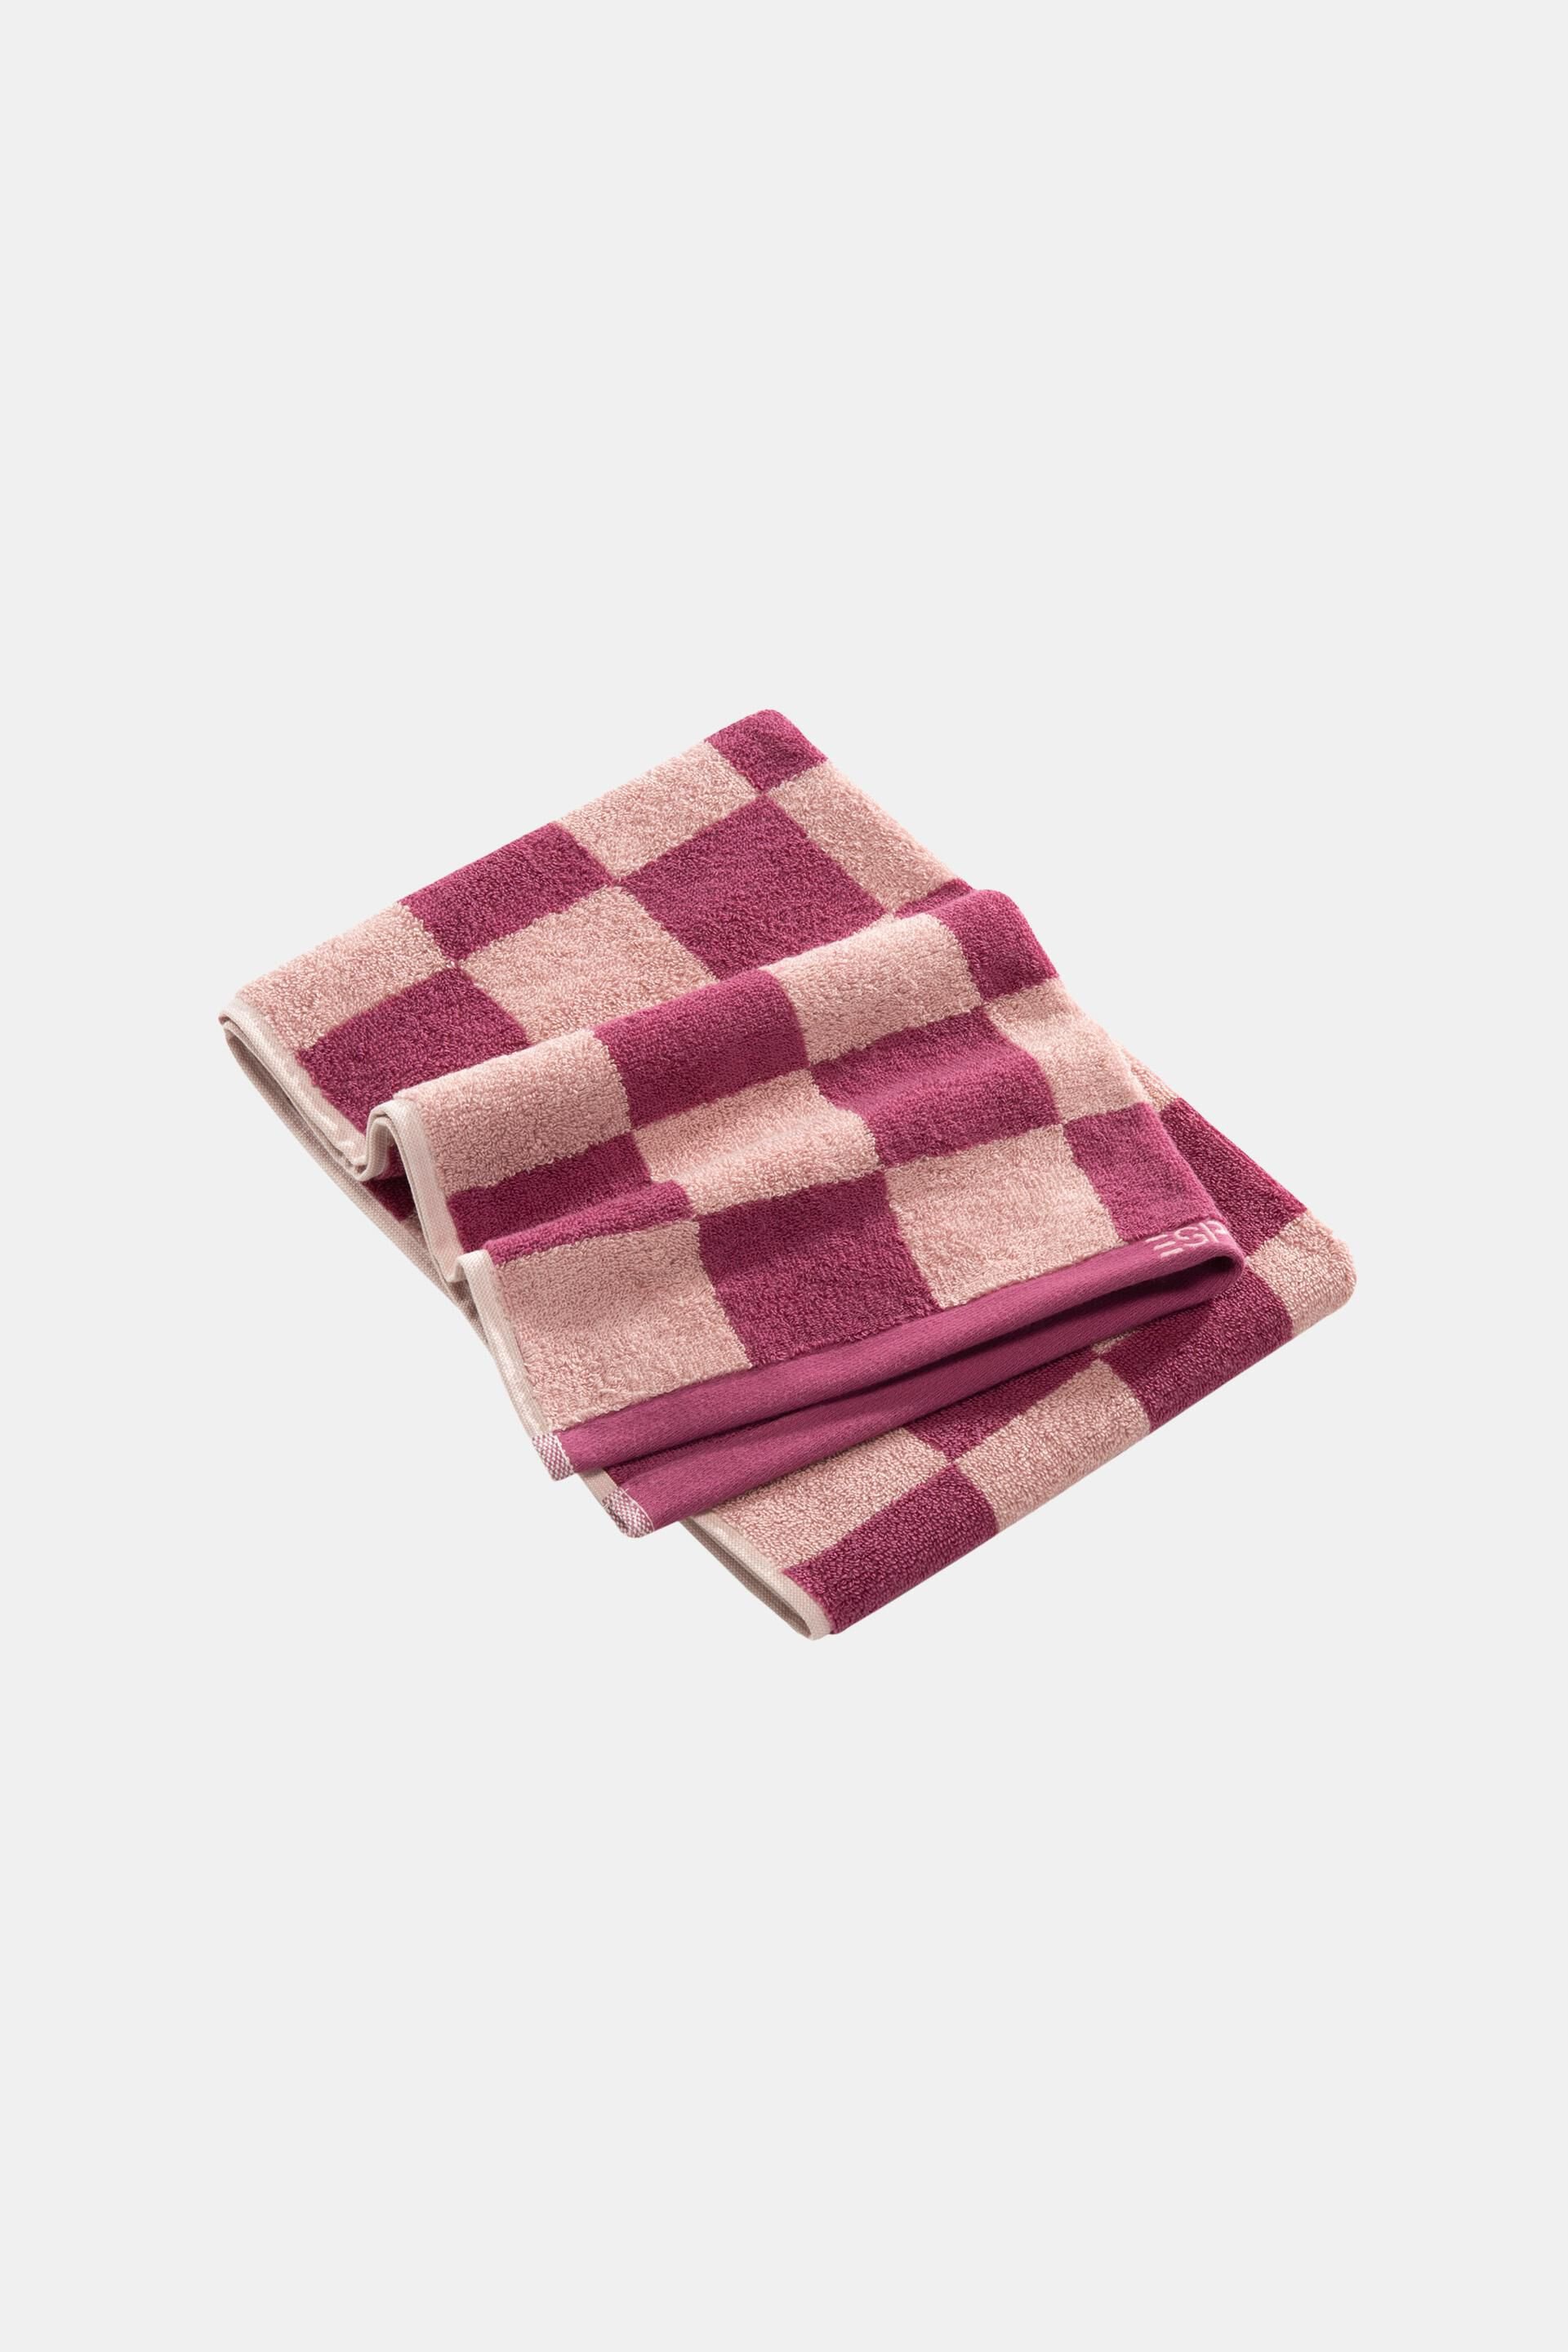 Esprit Chequered cotton pattern 100% towel,